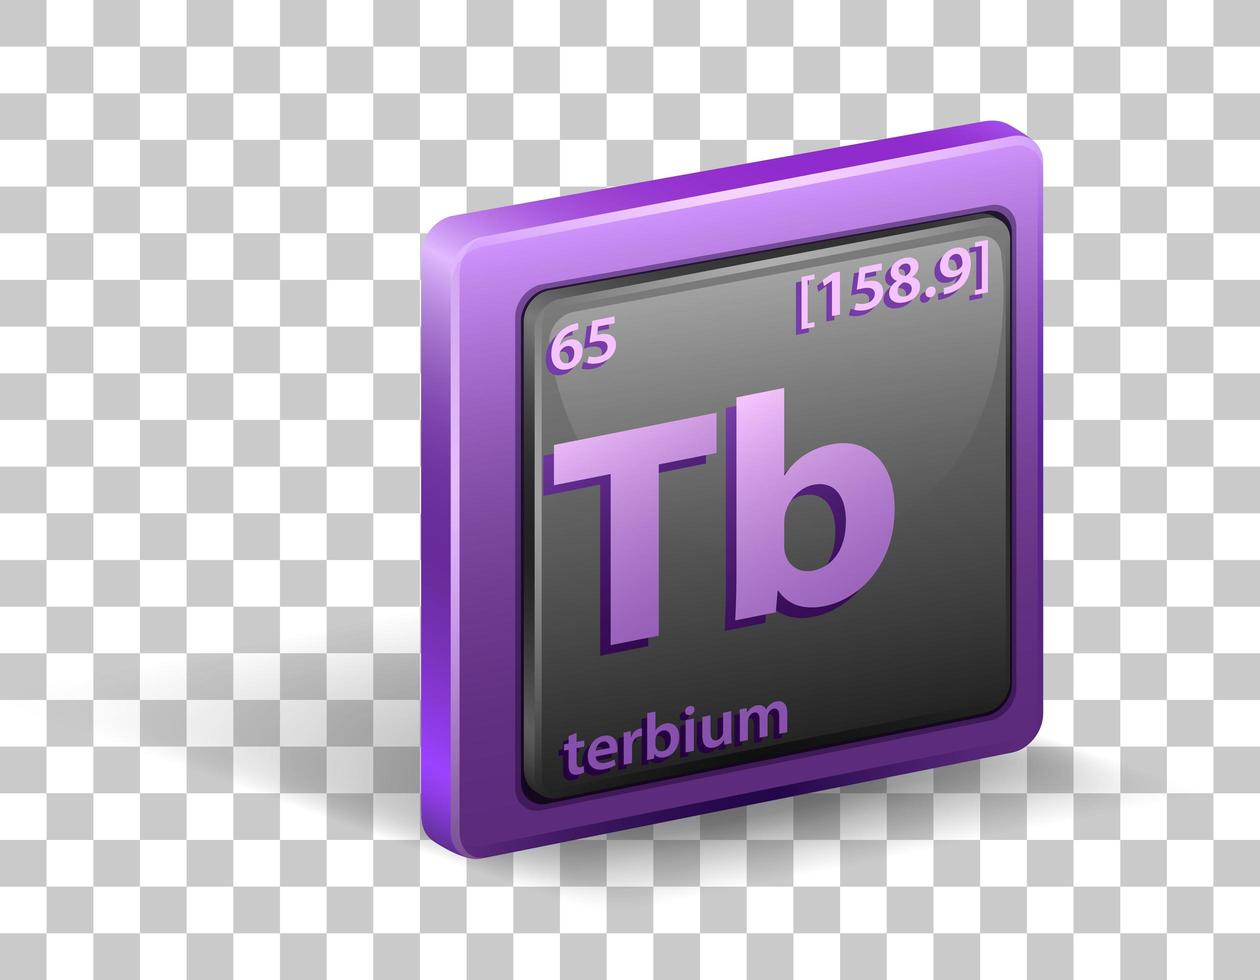 élément chimique terbium. symbole chimique avec numéro atomique et masse atomique. vecteur